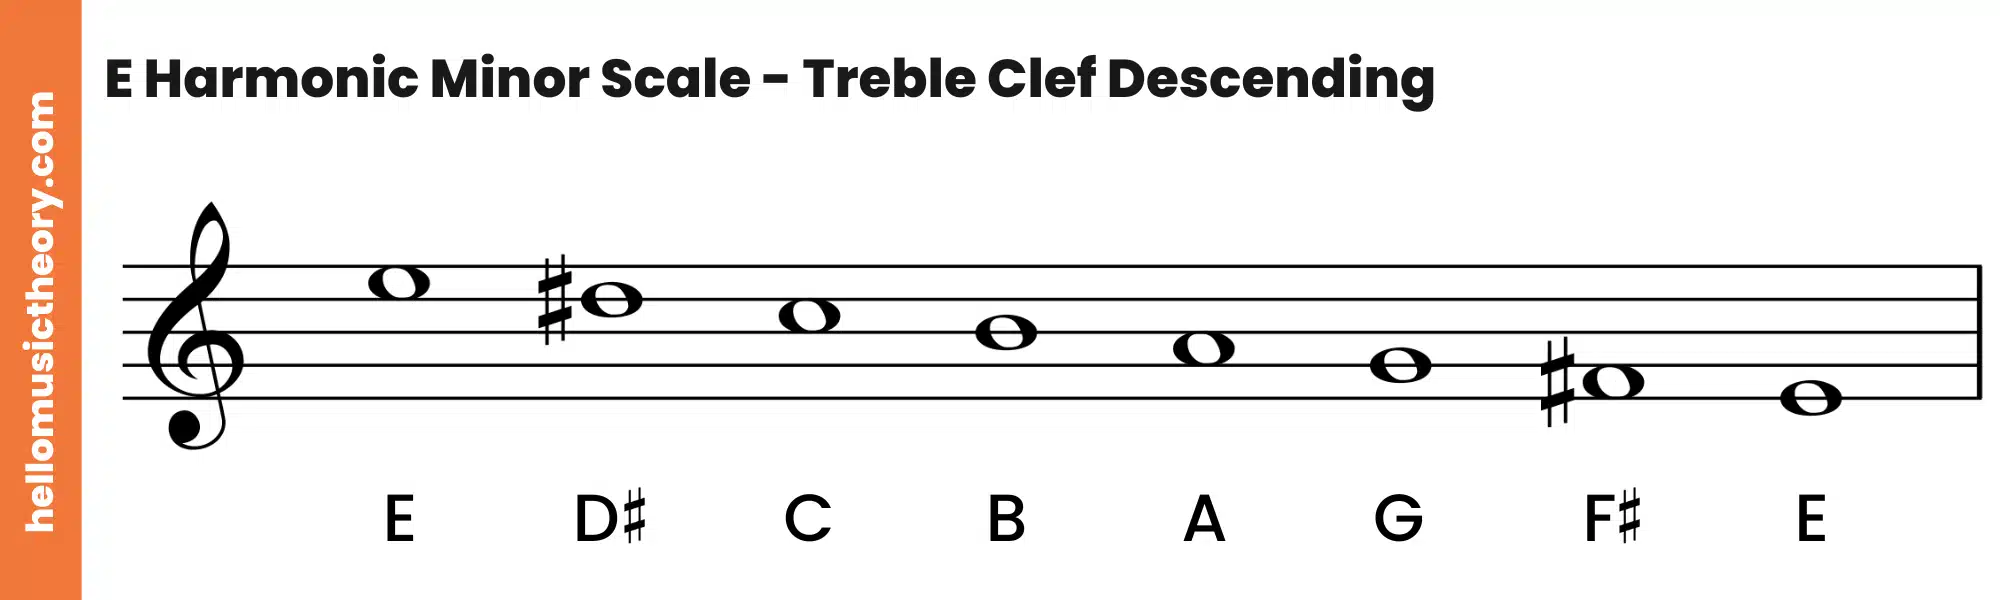 E Harmonic Minor Scale Treble Clef Descending